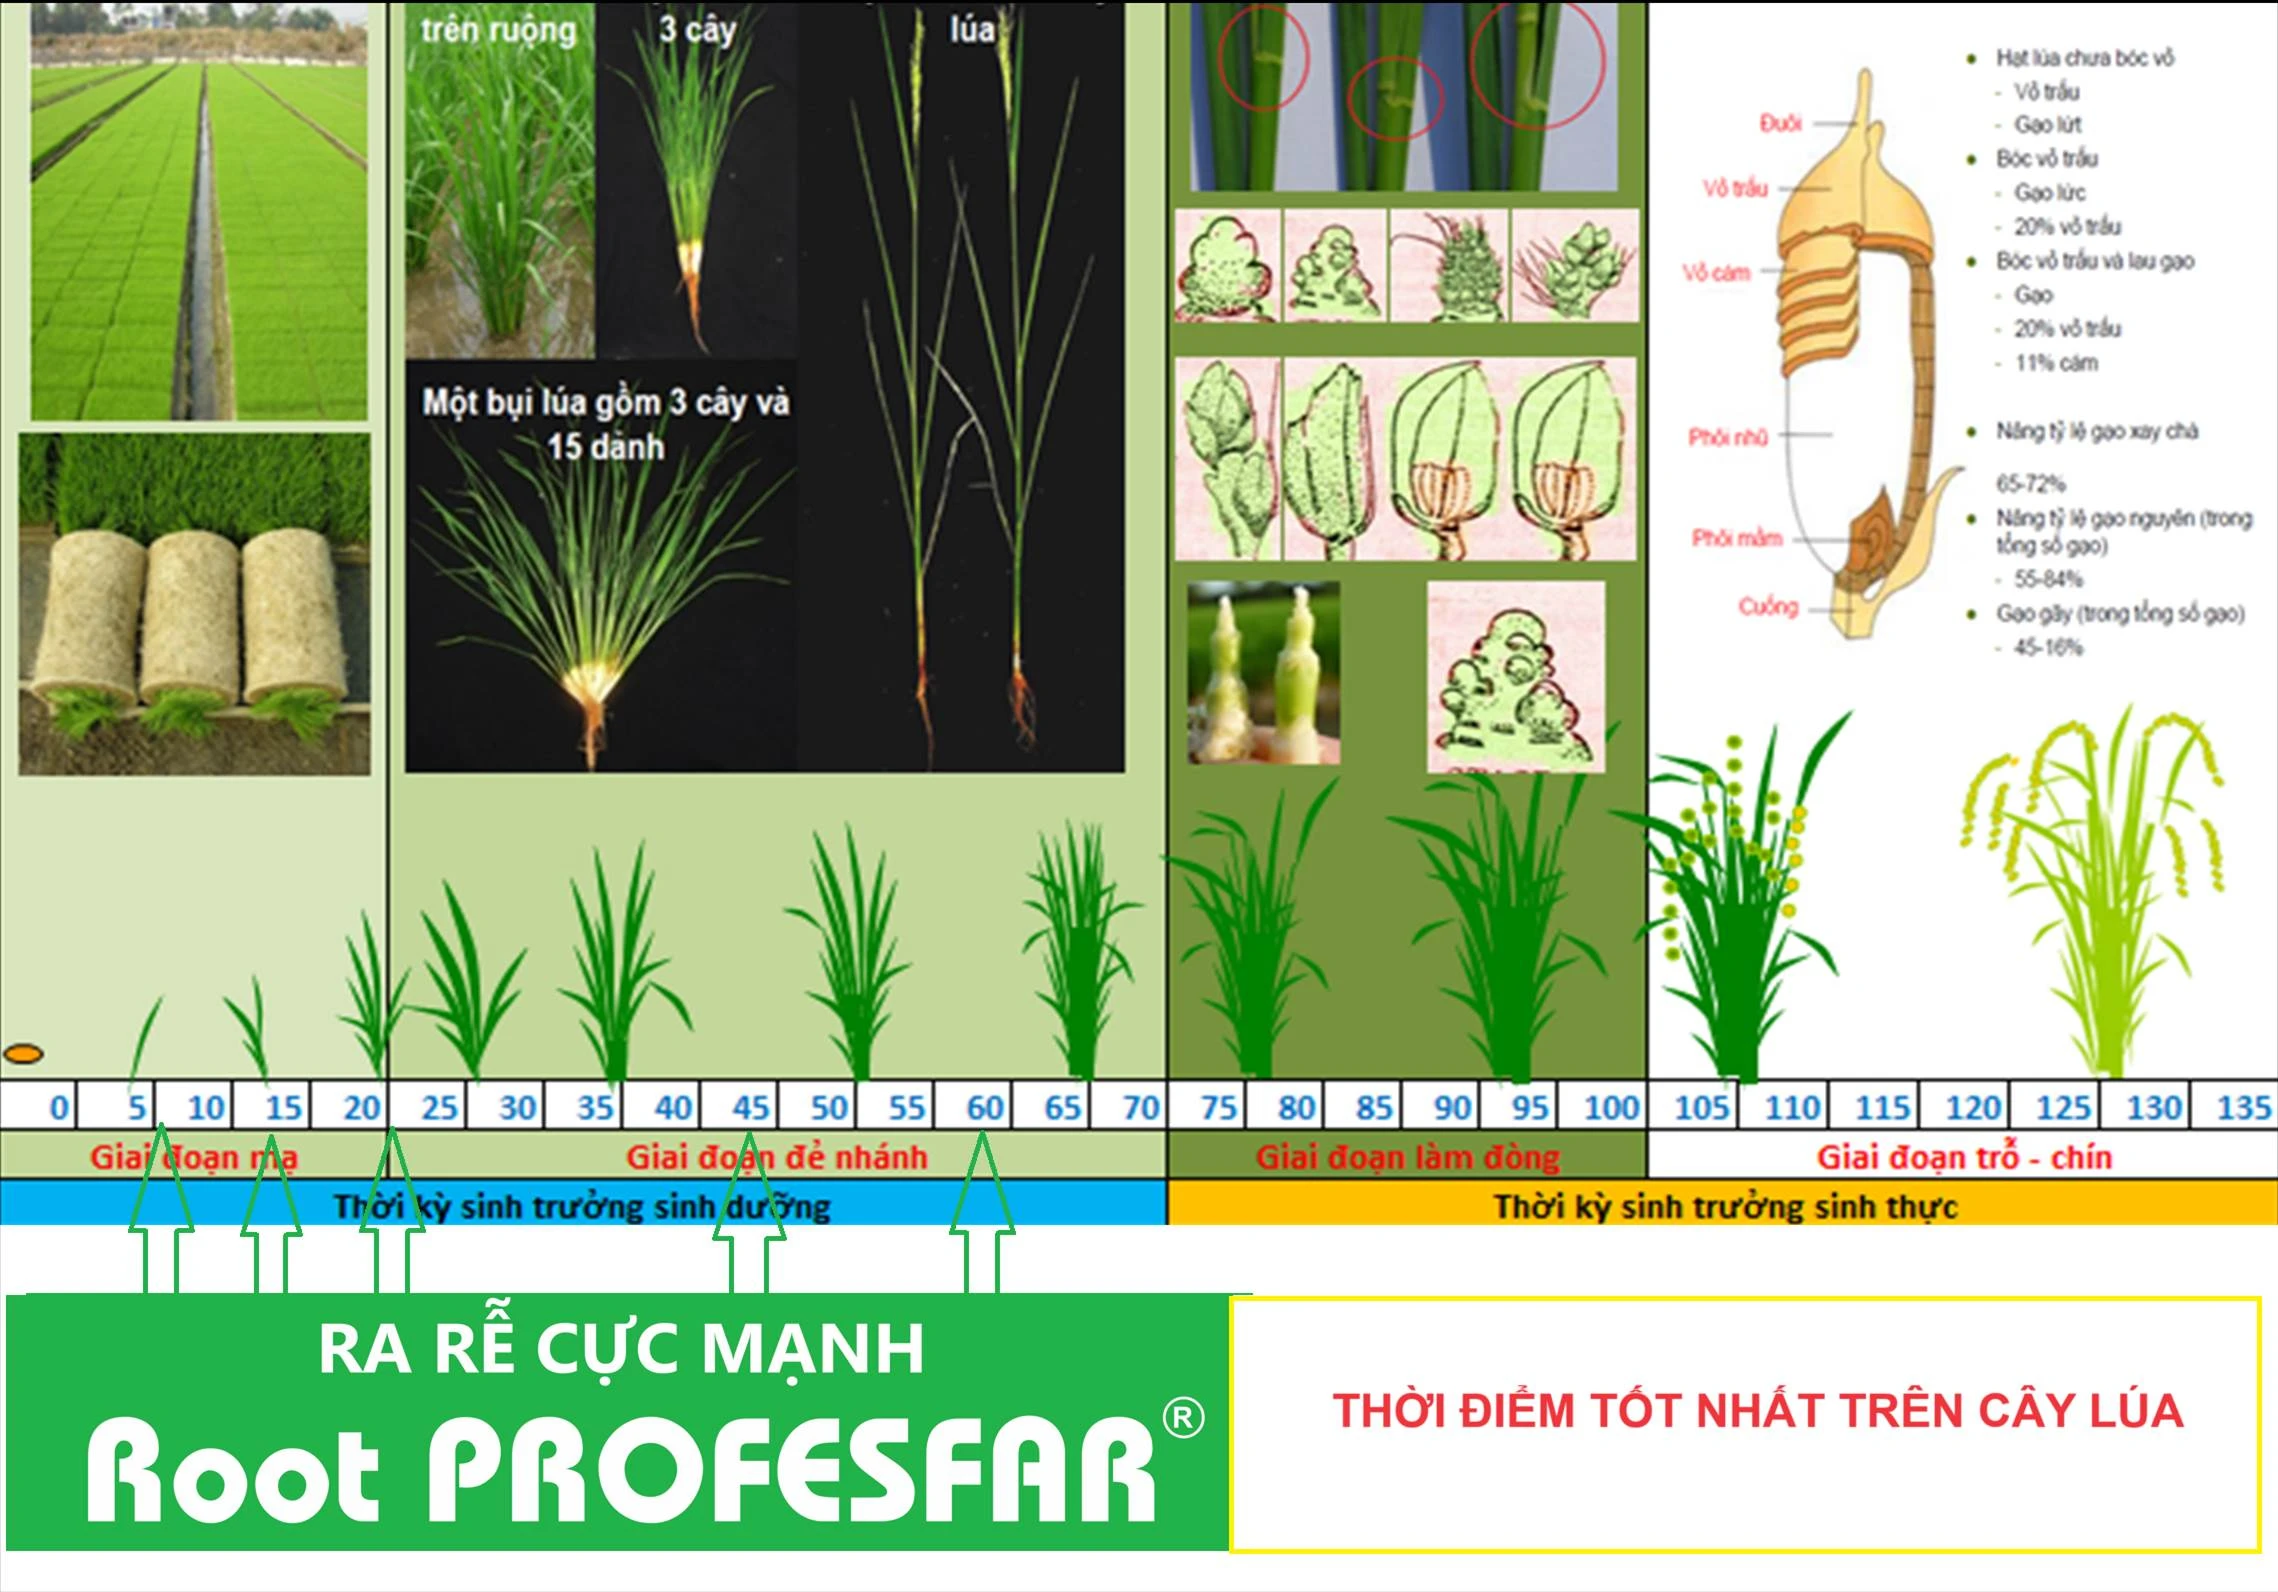 Quy trình sử dụng Root PROFESFAR®trên cây lúa